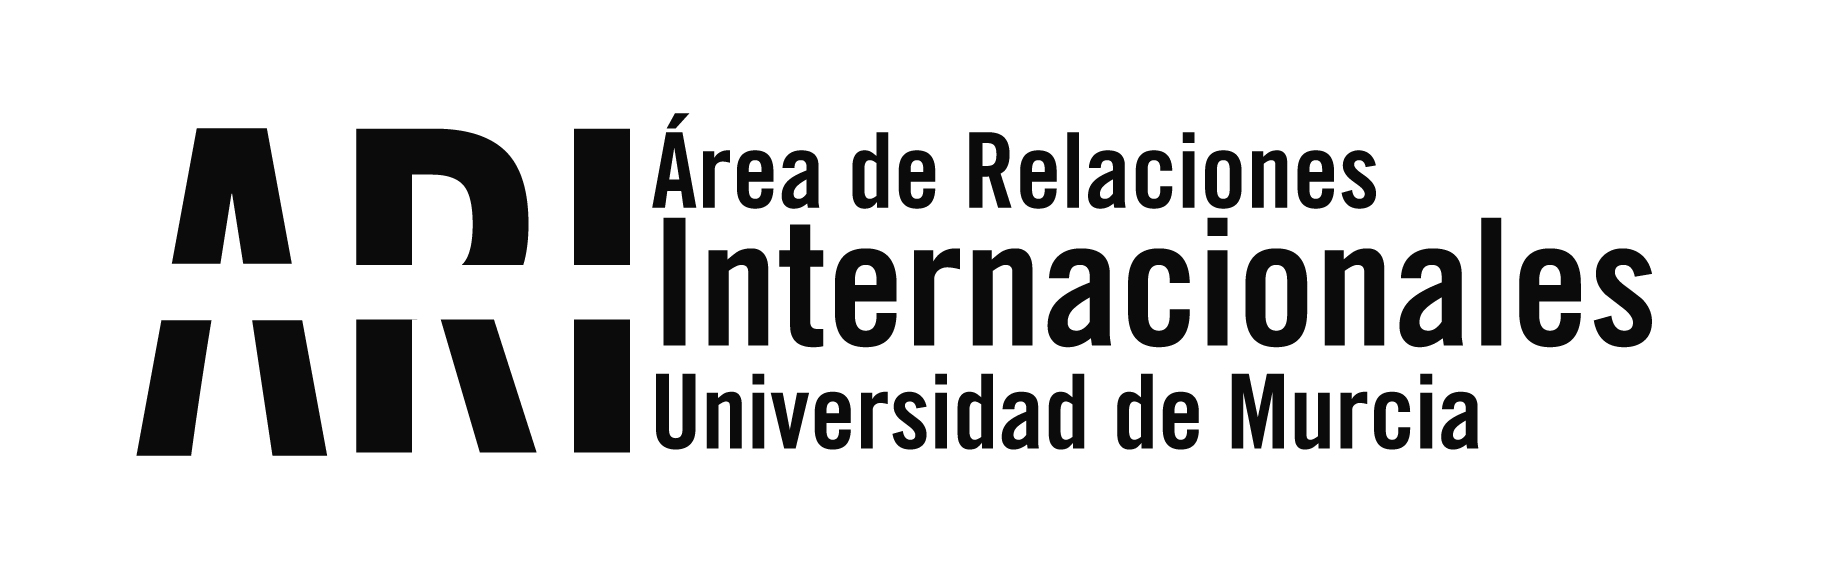 La Universidad de Murcia recibe al rector de la Universidad del Caribe de Panamá - Área de Relaciones Internacionales